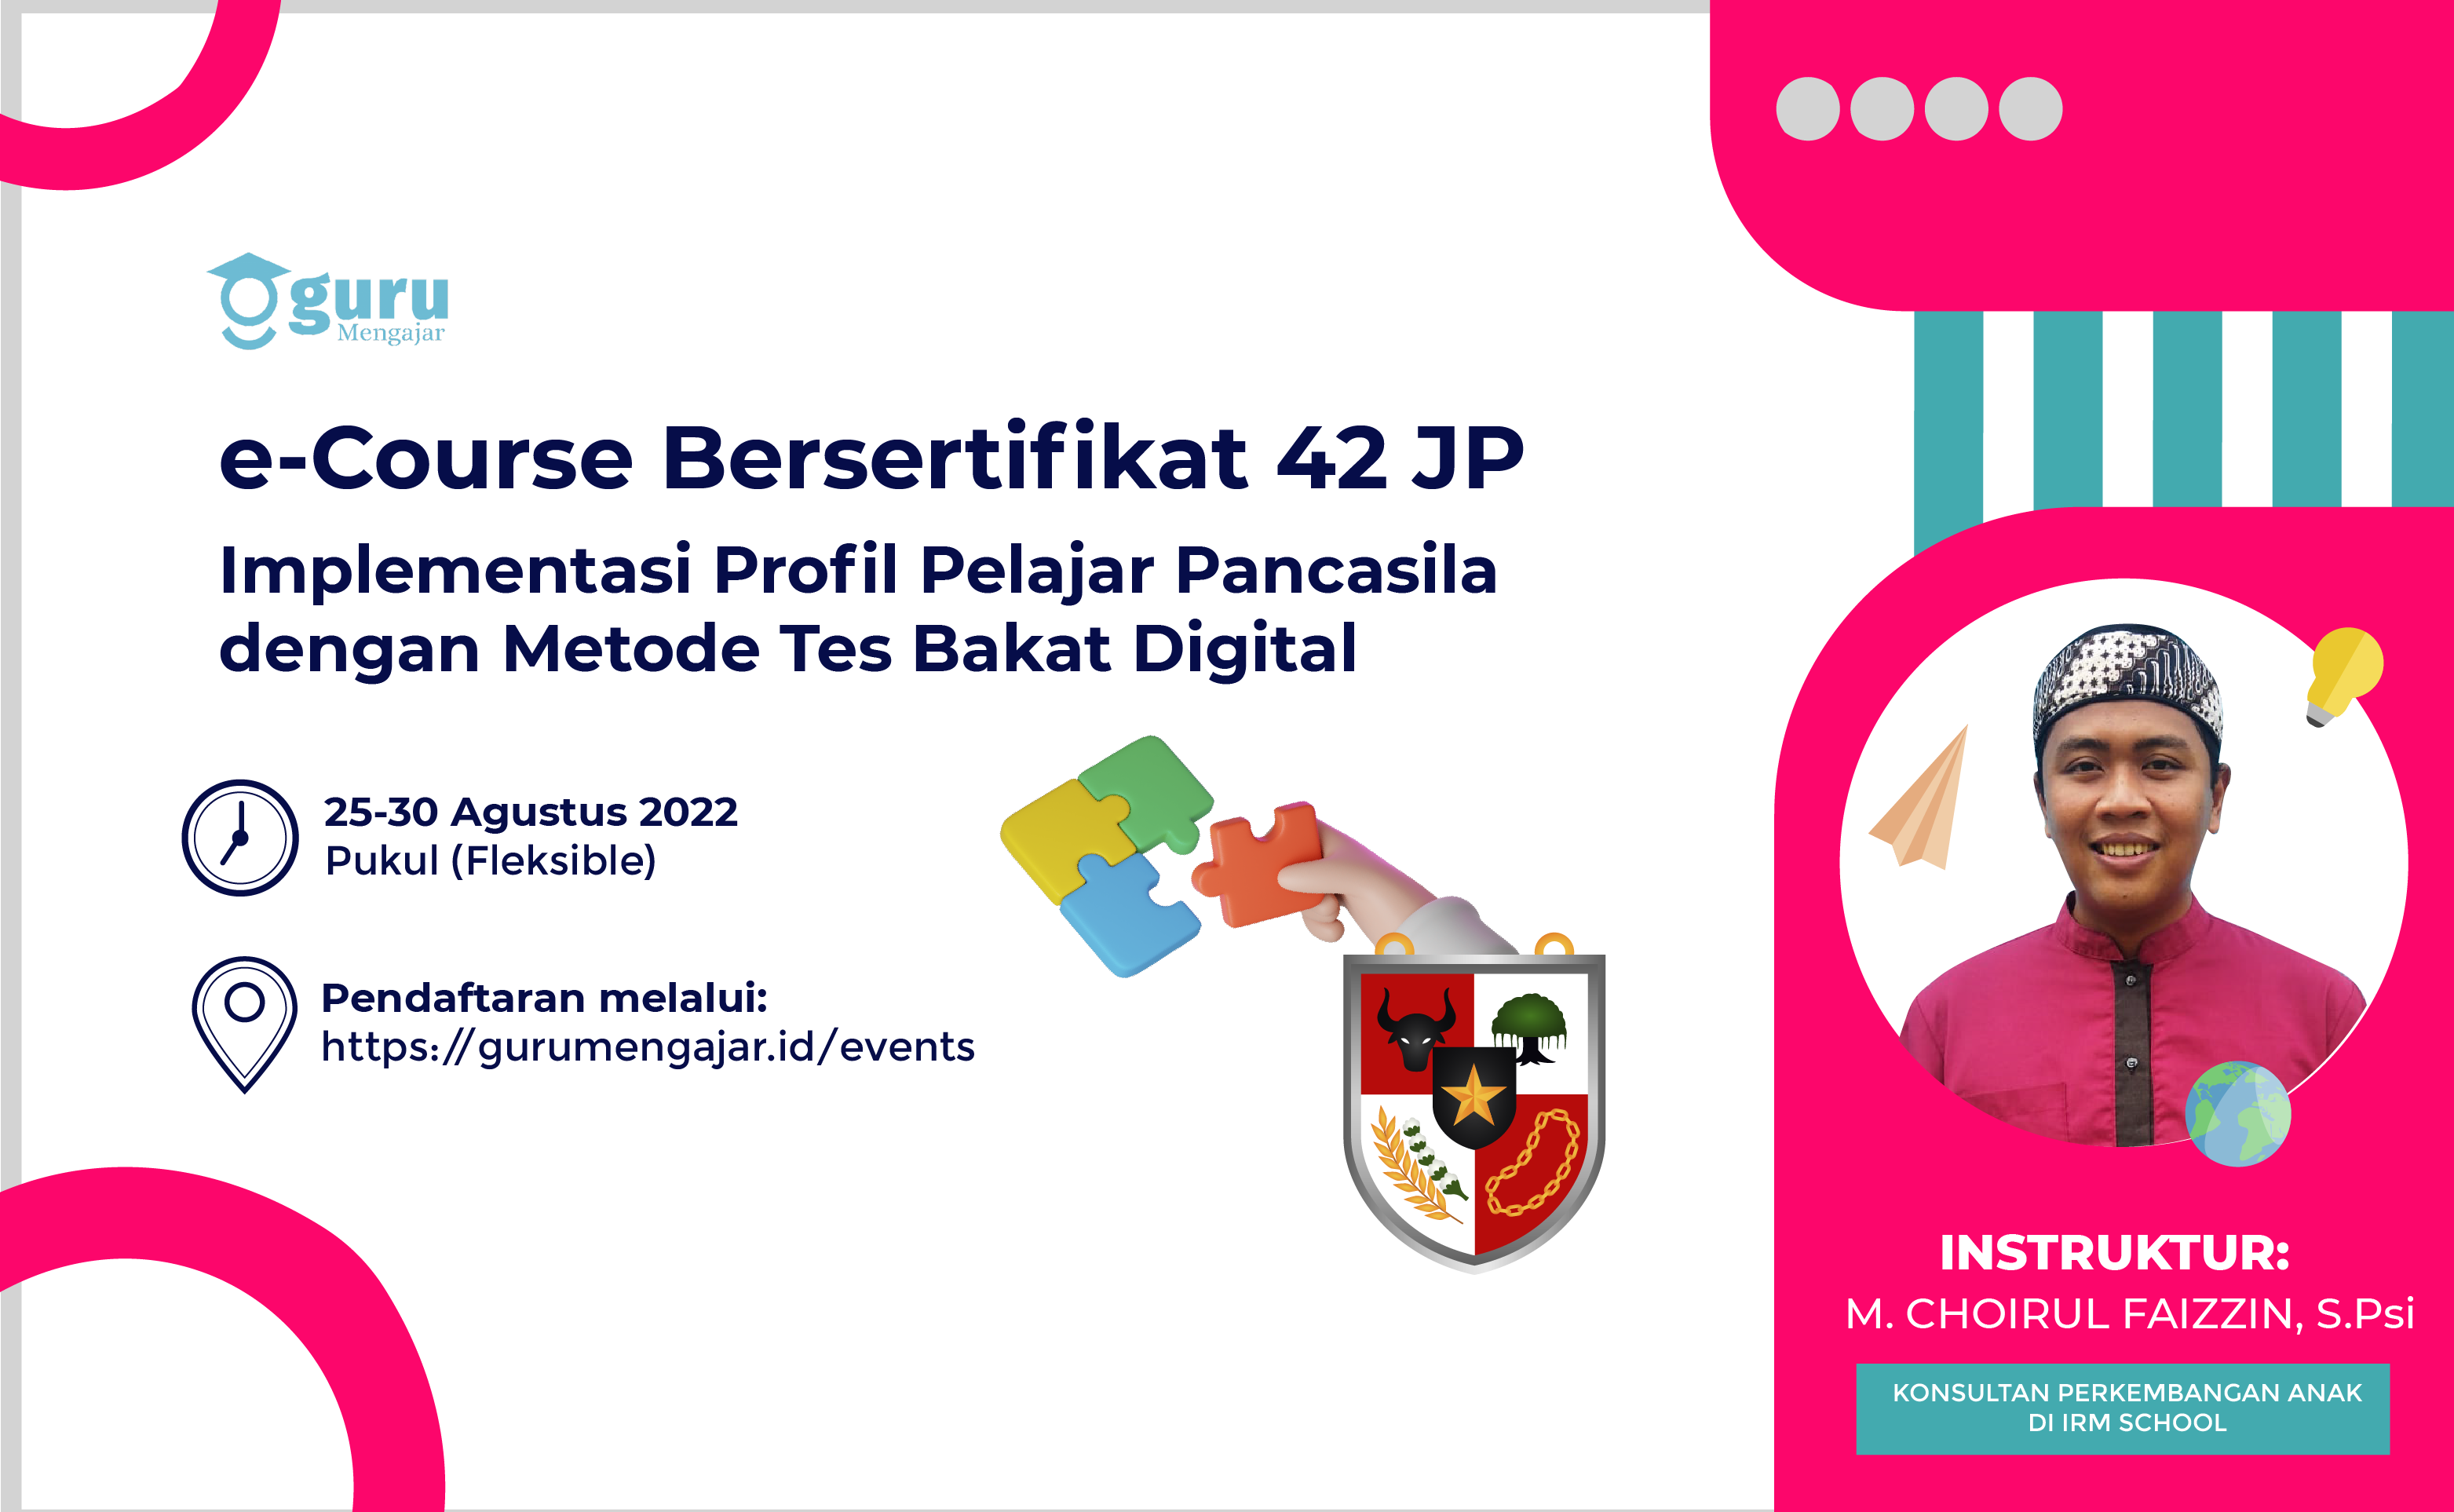 Implementasi Profil Pelajar Pancasila dengan Metode Tes Bakat Digital